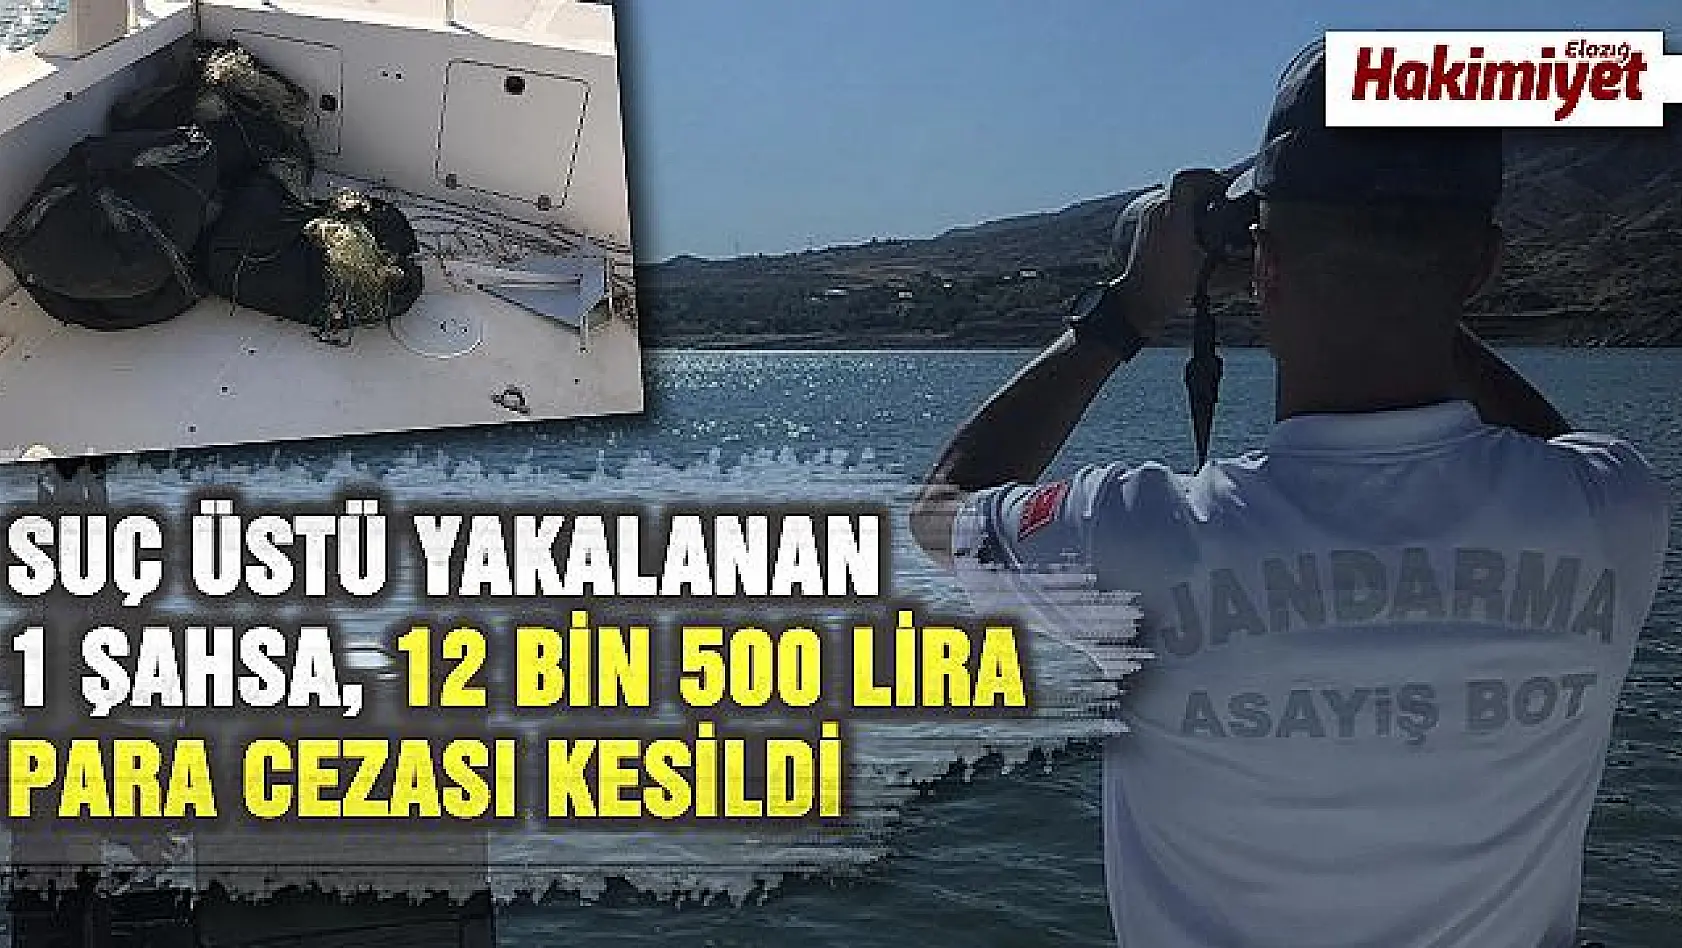 Elazığ'da kaçak balık avına 12 bin 500 TL ceza